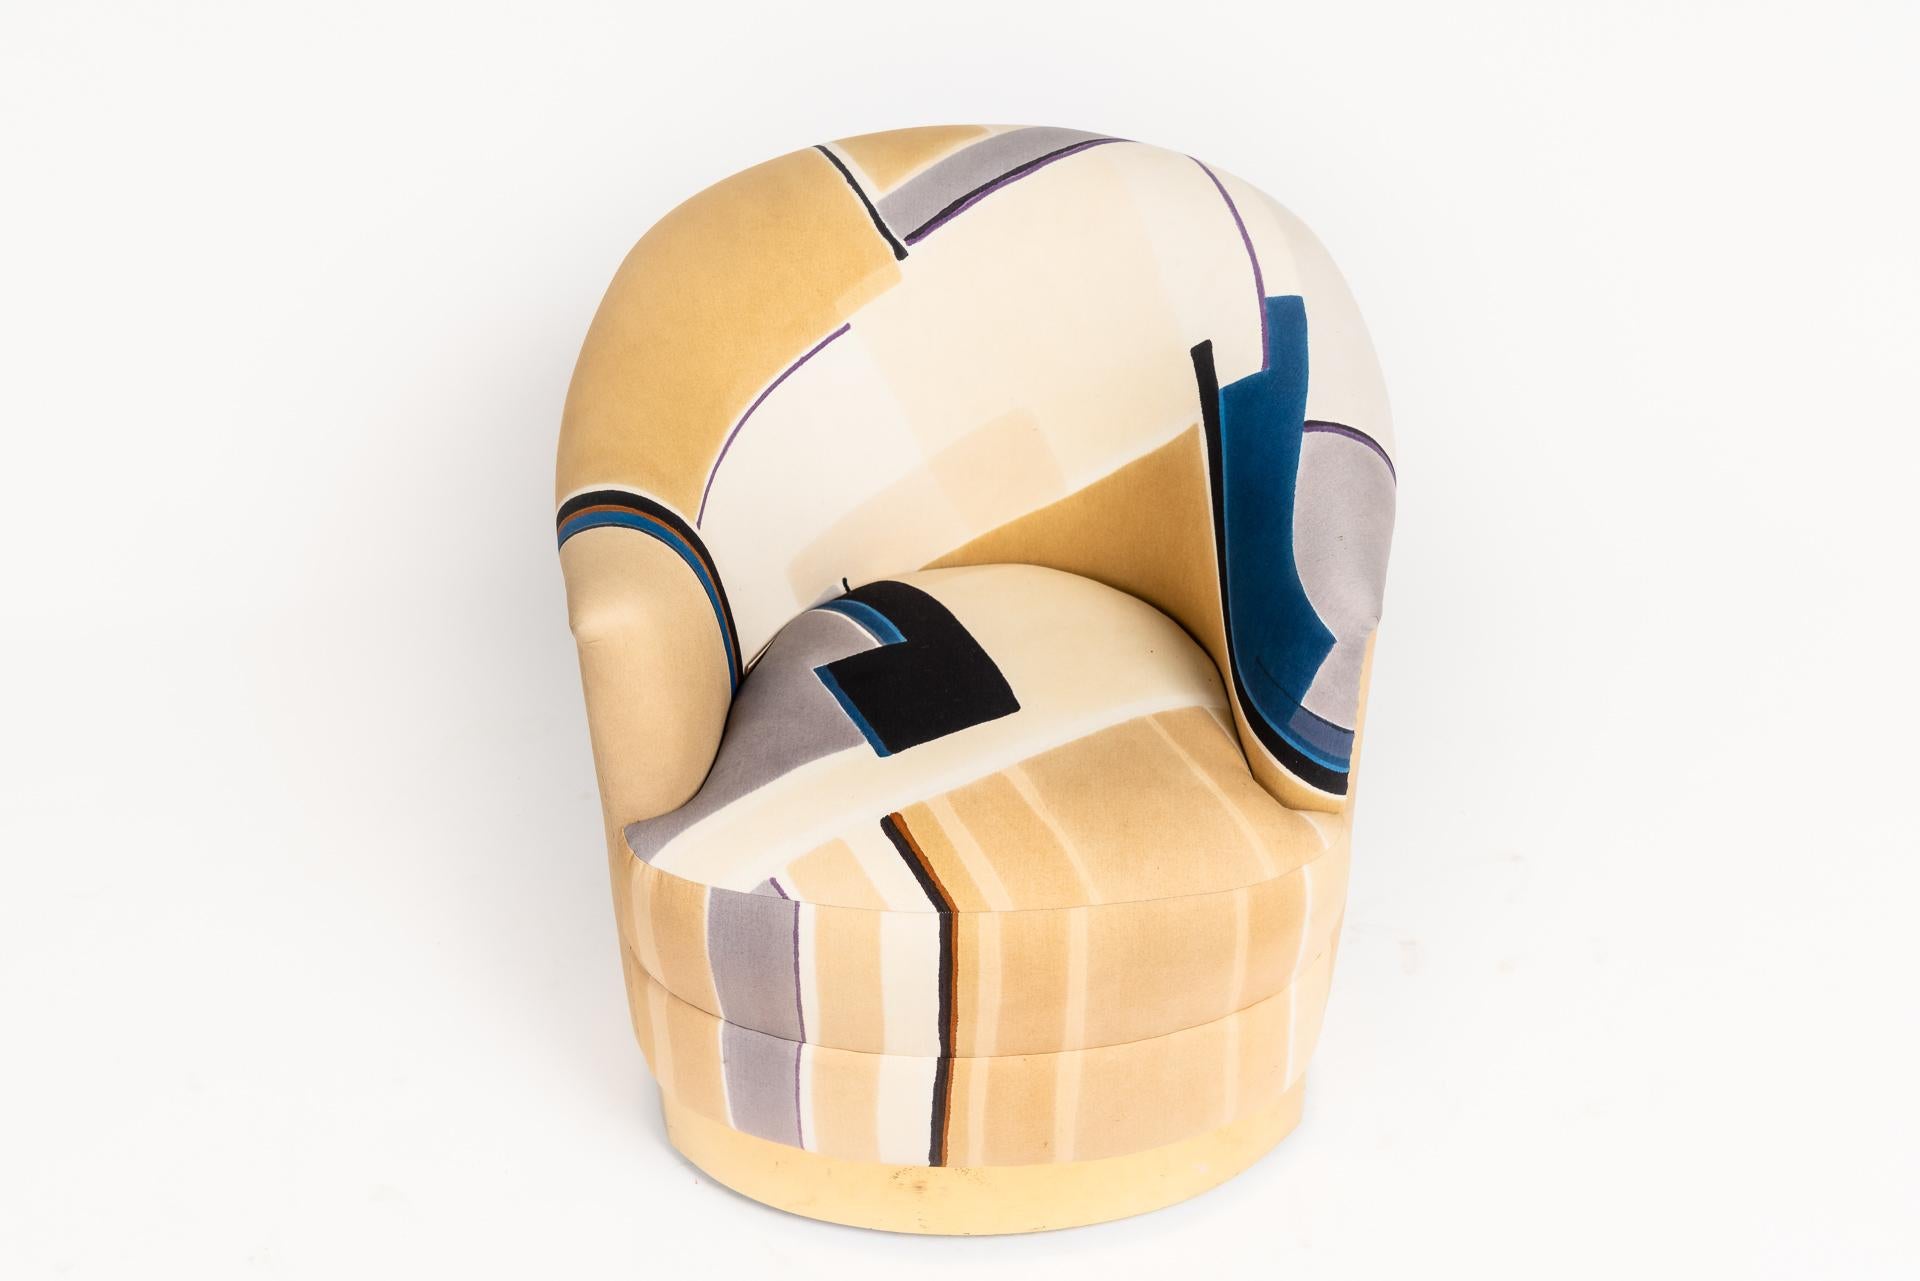 Dieser einzigartige Drehsessel von Donghia ist wirklich ein besonderes Designerstück. Die geschwungene Form ist sehr bequem und das Messinggestell verleiht dem Stuhl einen modernen Touch. Der Stoff ist ein handbedruckter Originalstoff aus den 1970er